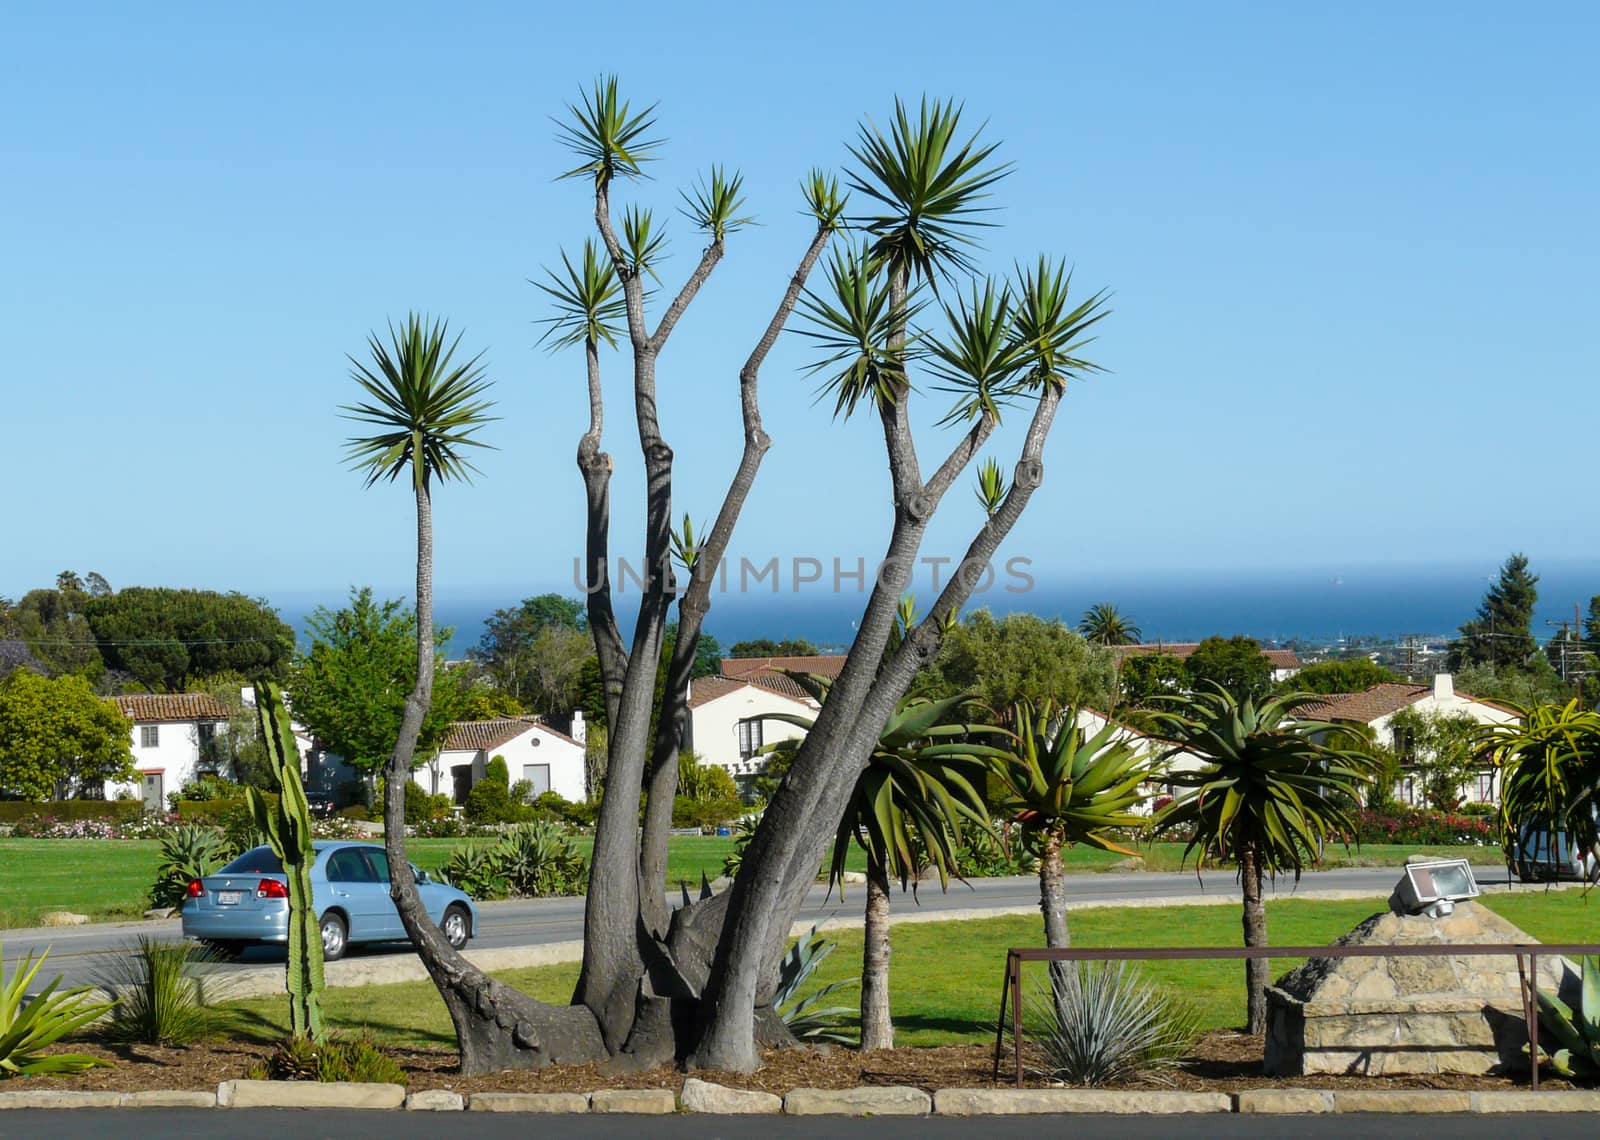 Palm Tree in Santa Barbara by wit_gorski